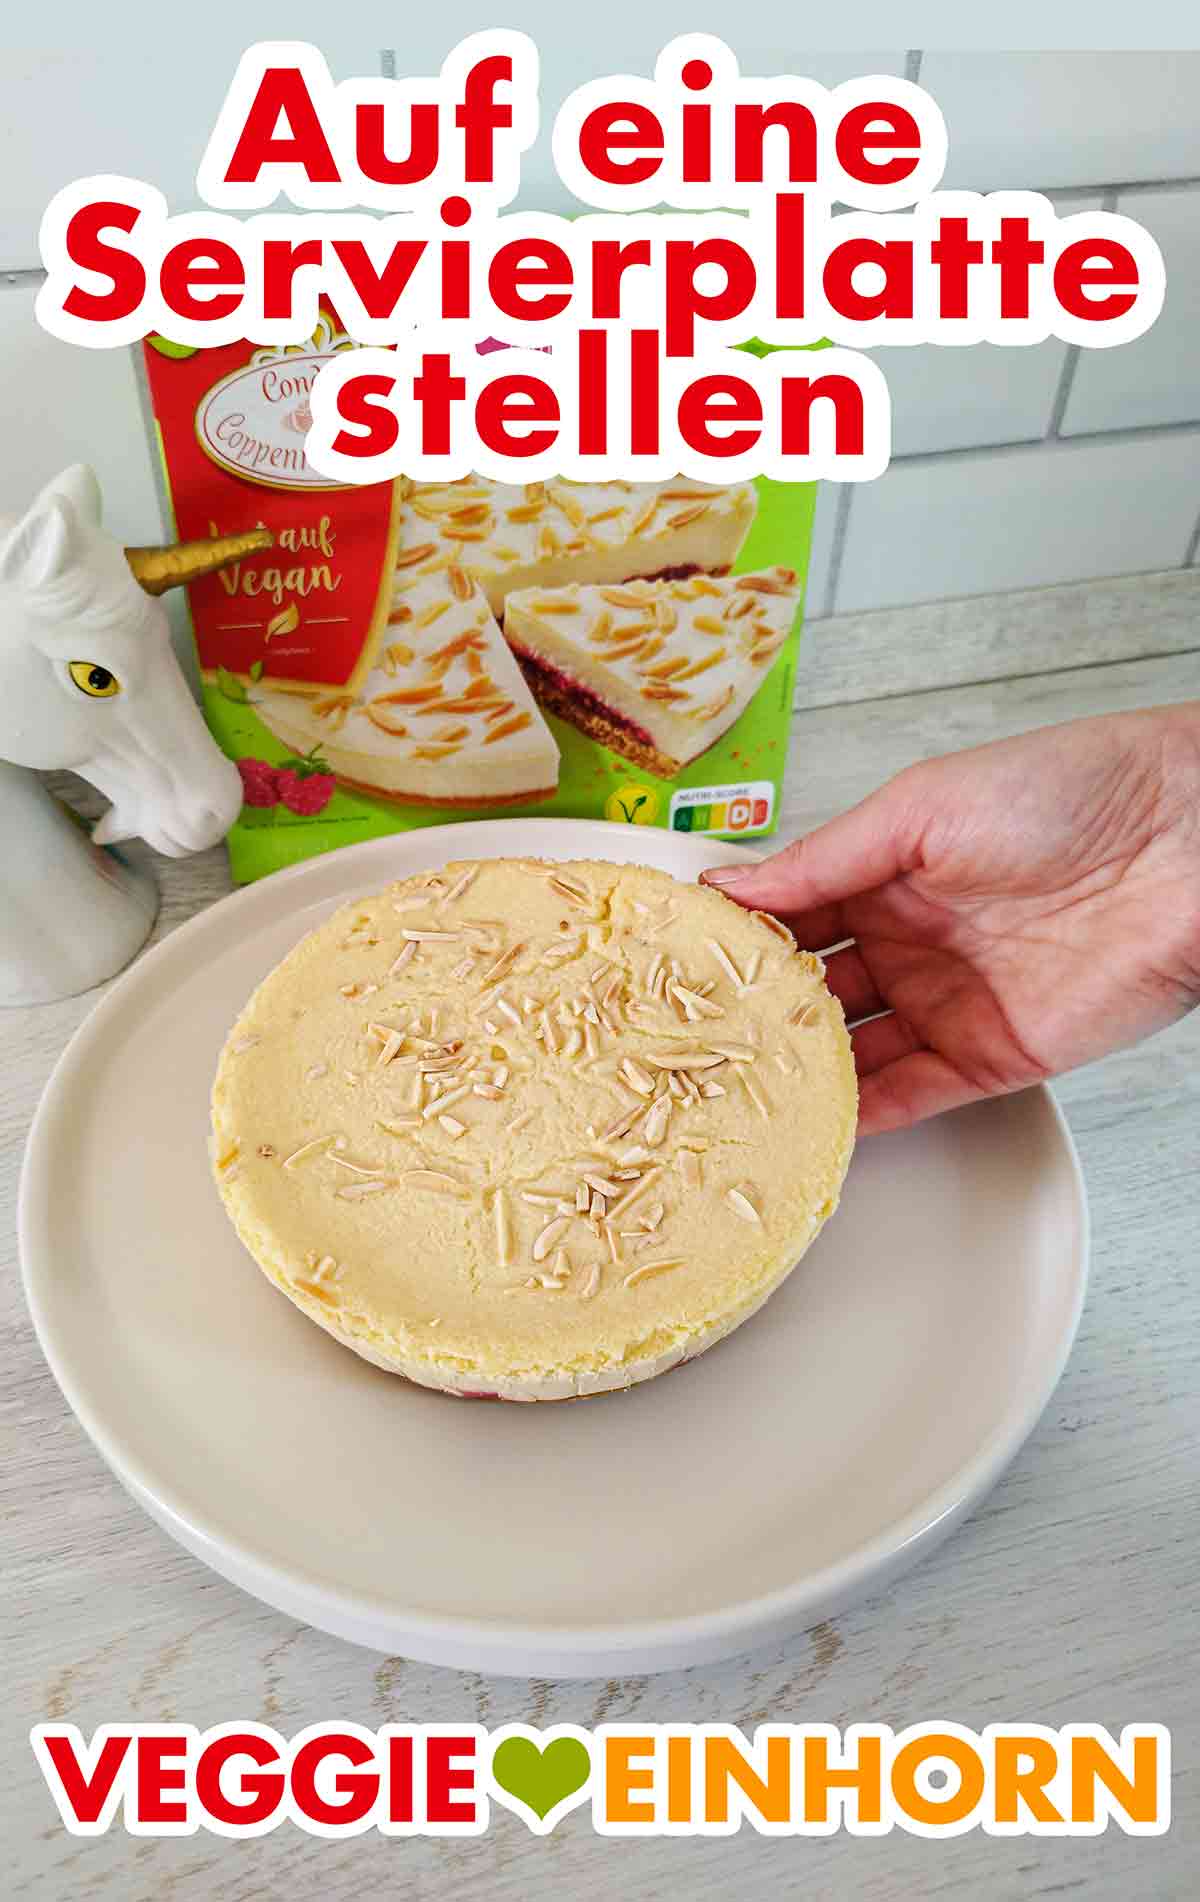 Der vegane Himbeer Mandel Cheesecake von Coppenrath und Wiese wird auf eine Servierplatte gelegt